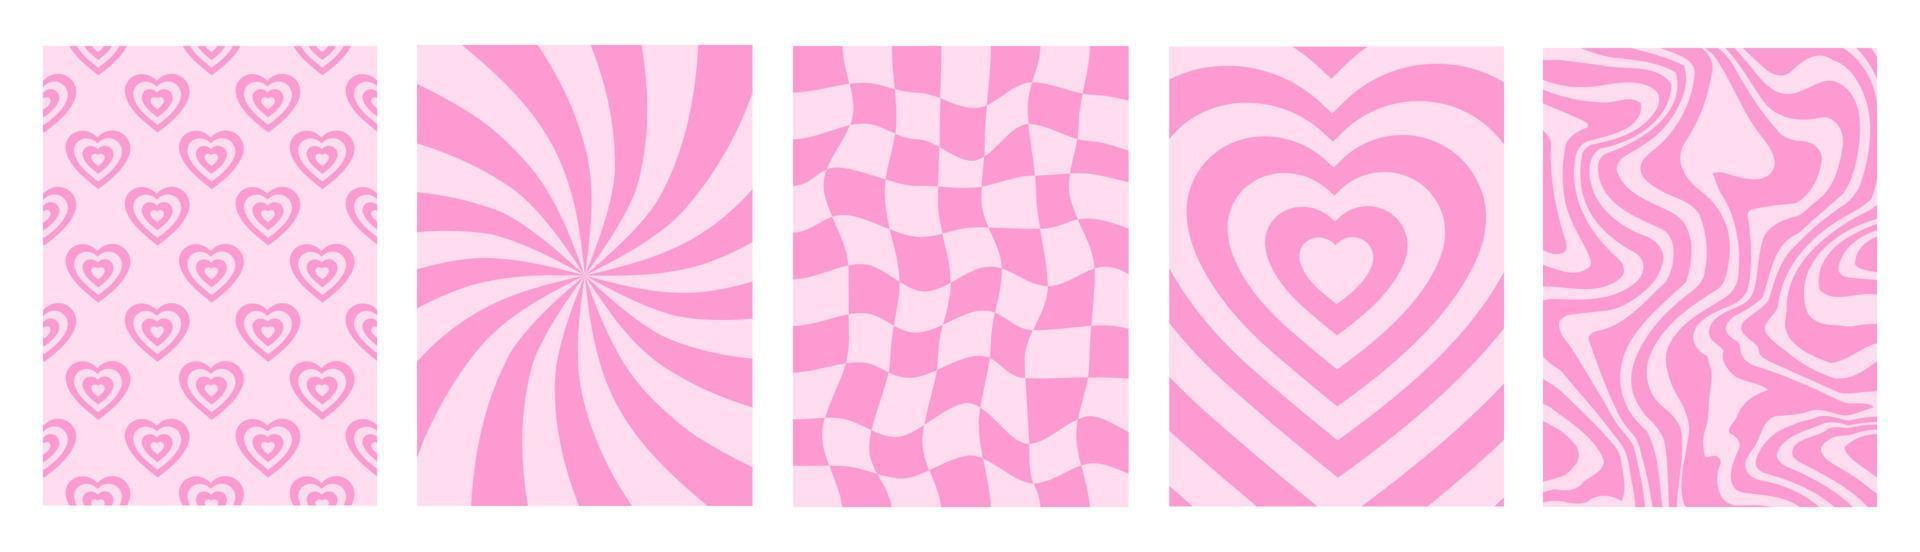 groovy romantisch reeks verticaal achtergronden in stijl retro jaren 60, jaren 70. gelukkig valentijnsdag dag groet kaart. vector illustratie. roze kleuren